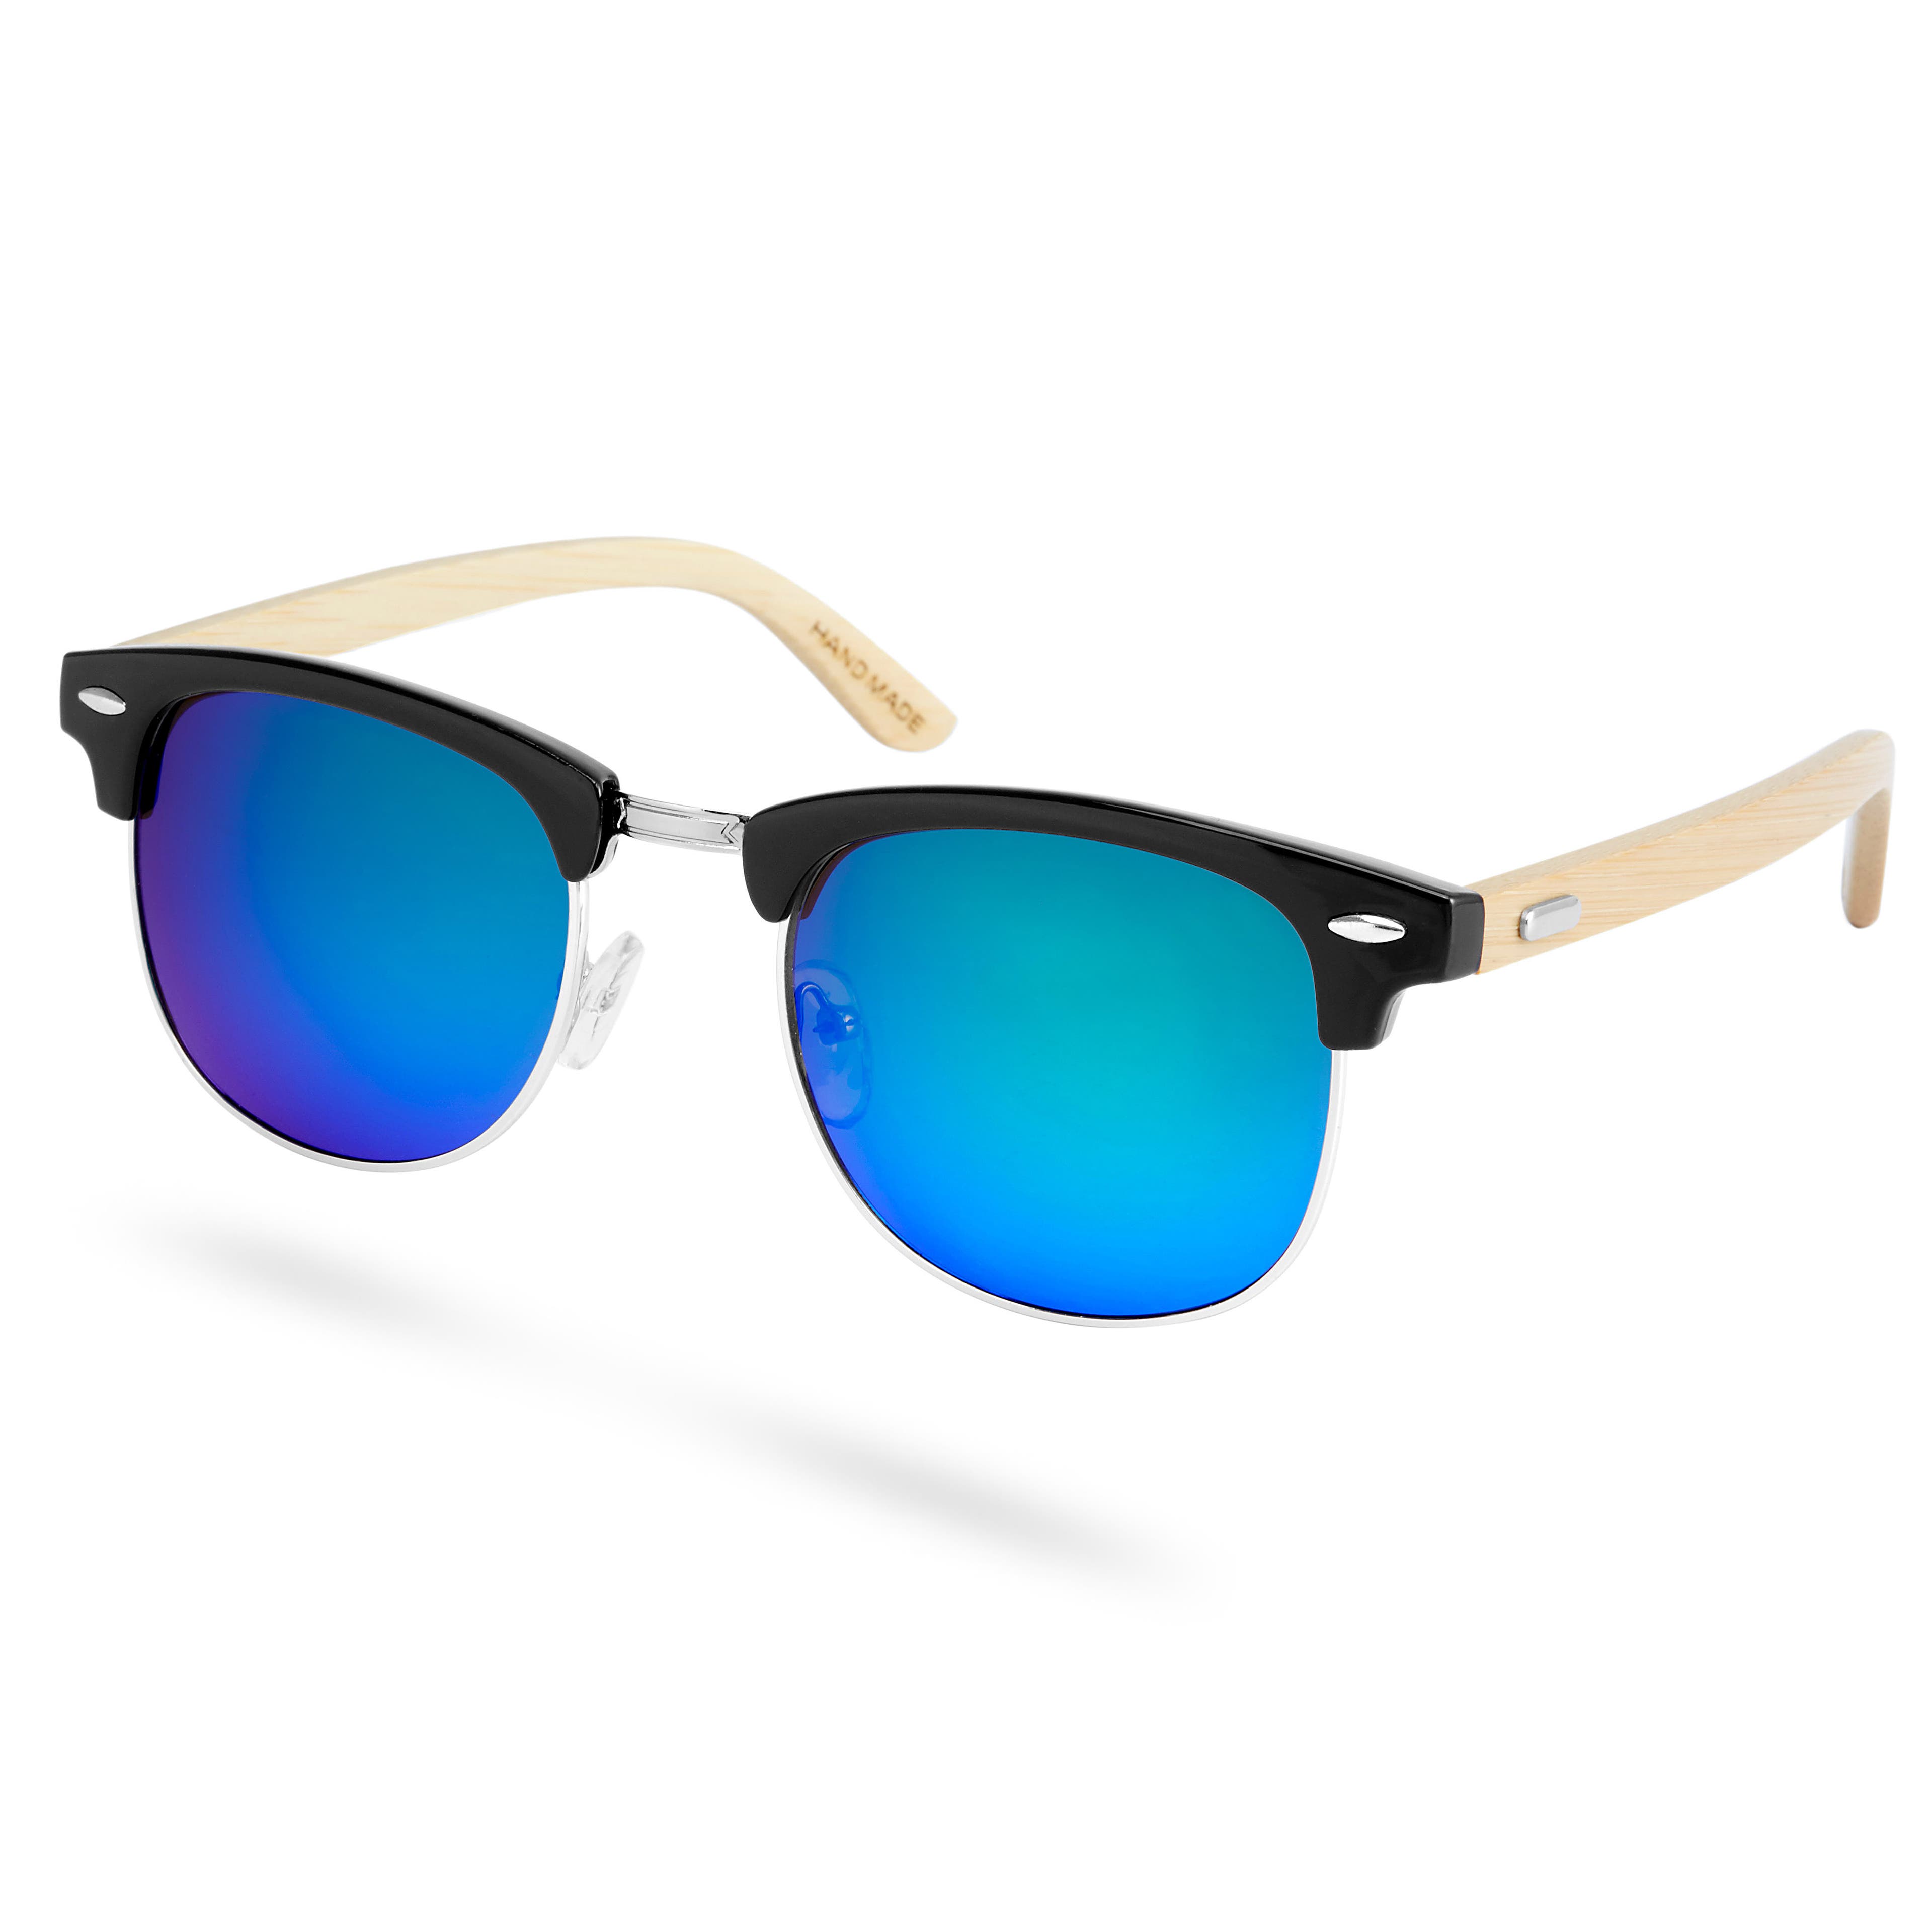 Holz Sonnenbrille Mit Blaugrünen Sonnenbrillengläsern 